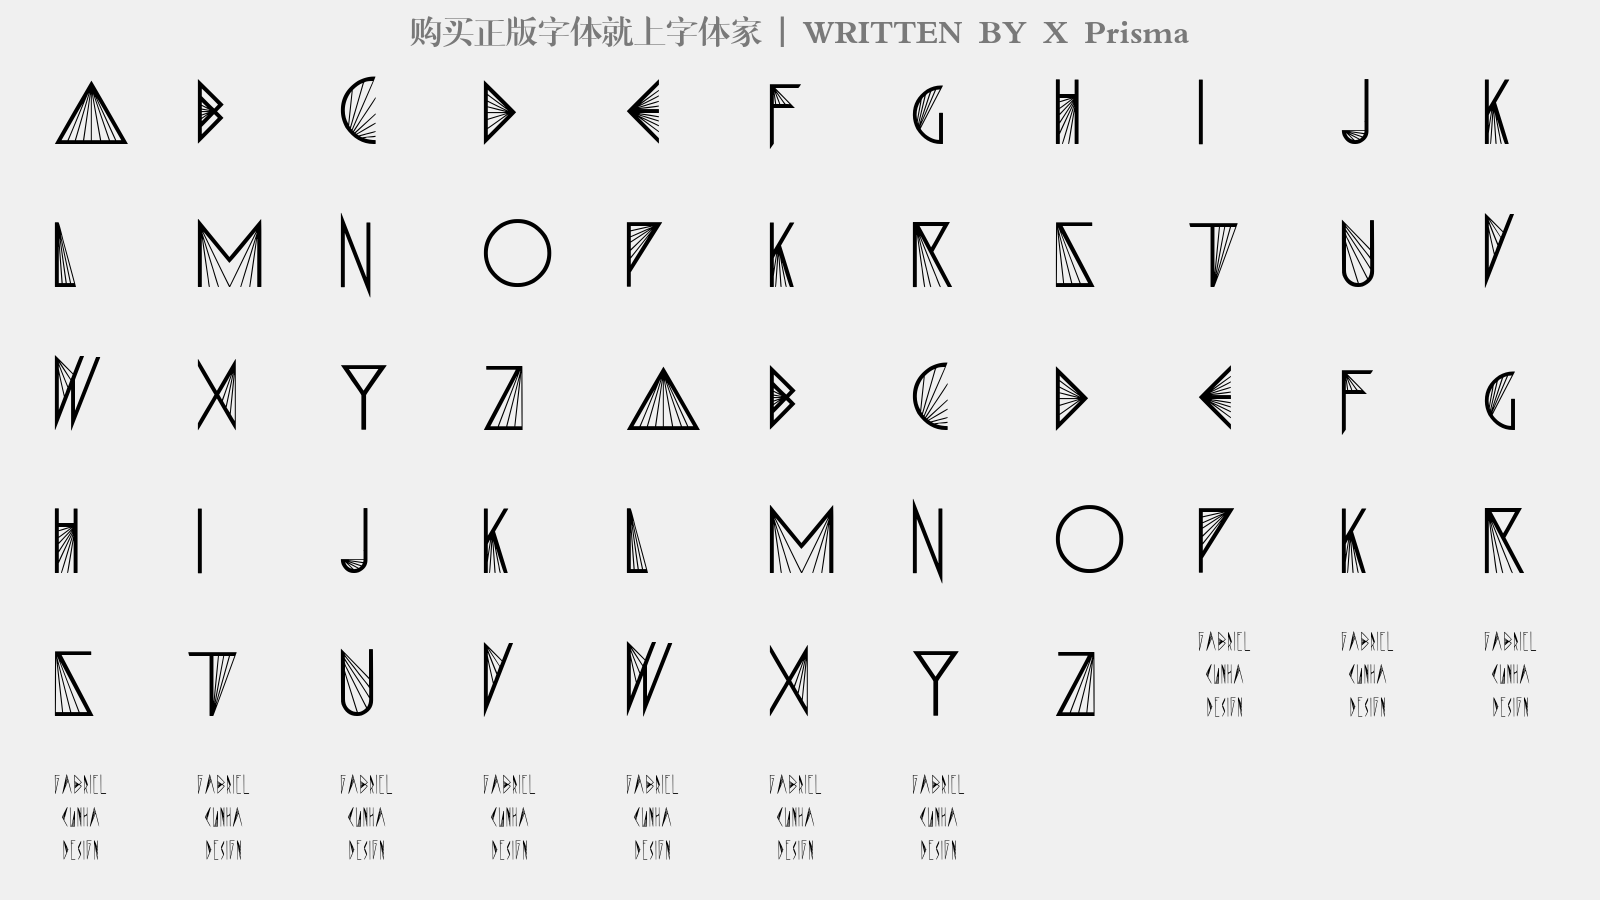 X Prisma - 大写字母/小写字母/数字